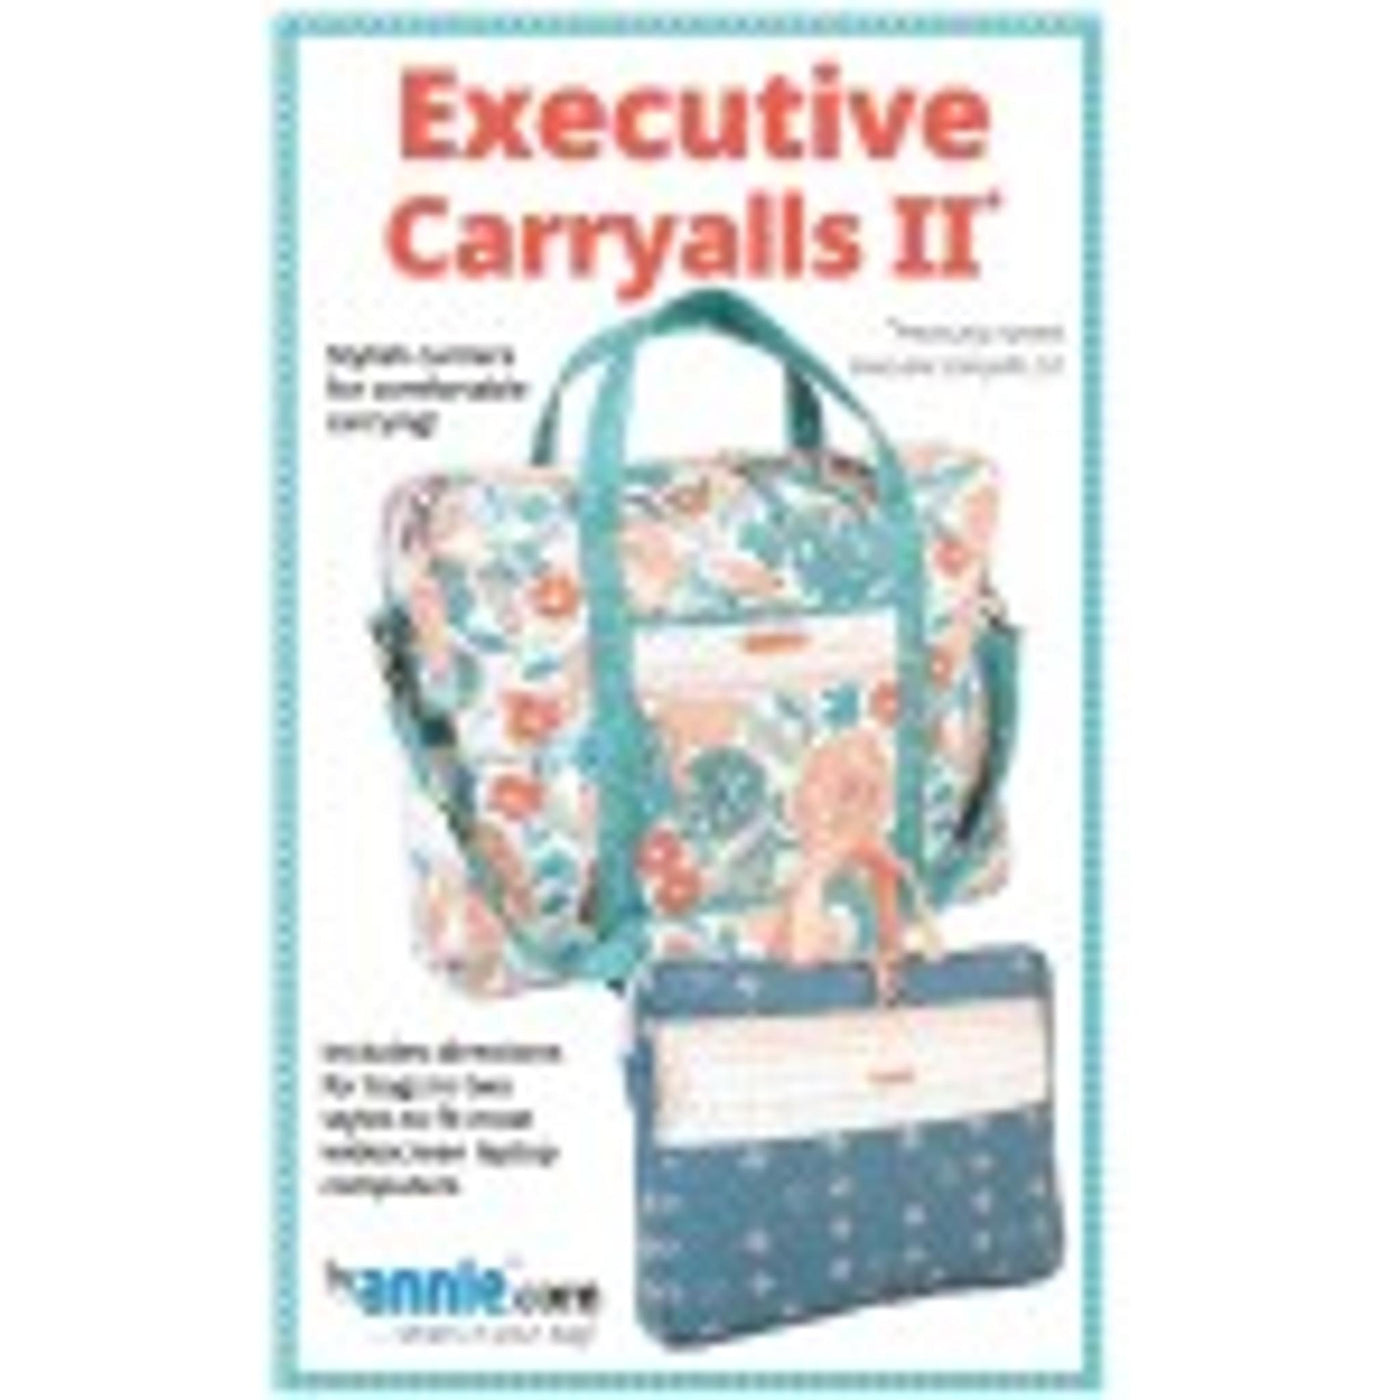 Executive Carryalls